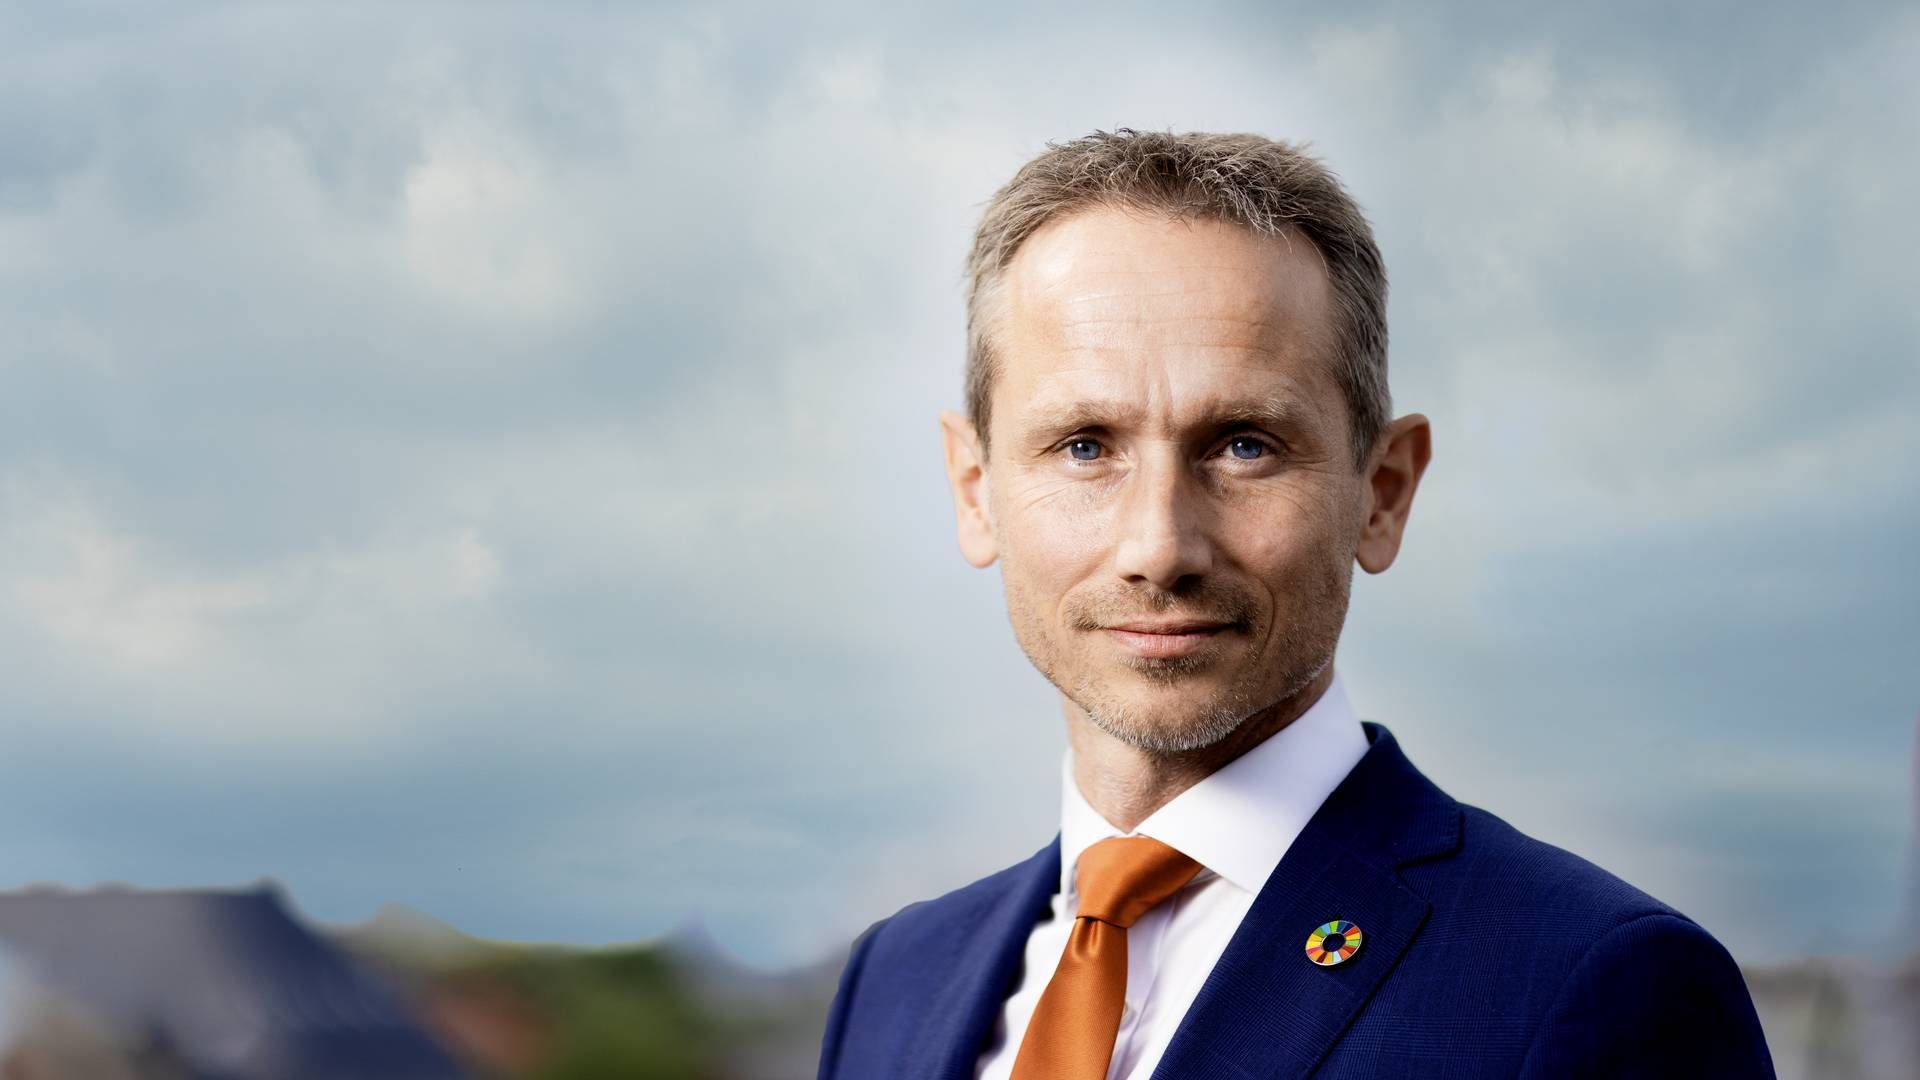 Adm. direktør i Erhvervsorganisationen Green Power Denmark, Kristian Jensen, frygter, at omstillingen til grøn energi mister fart. | Foto: Green Power Denmark